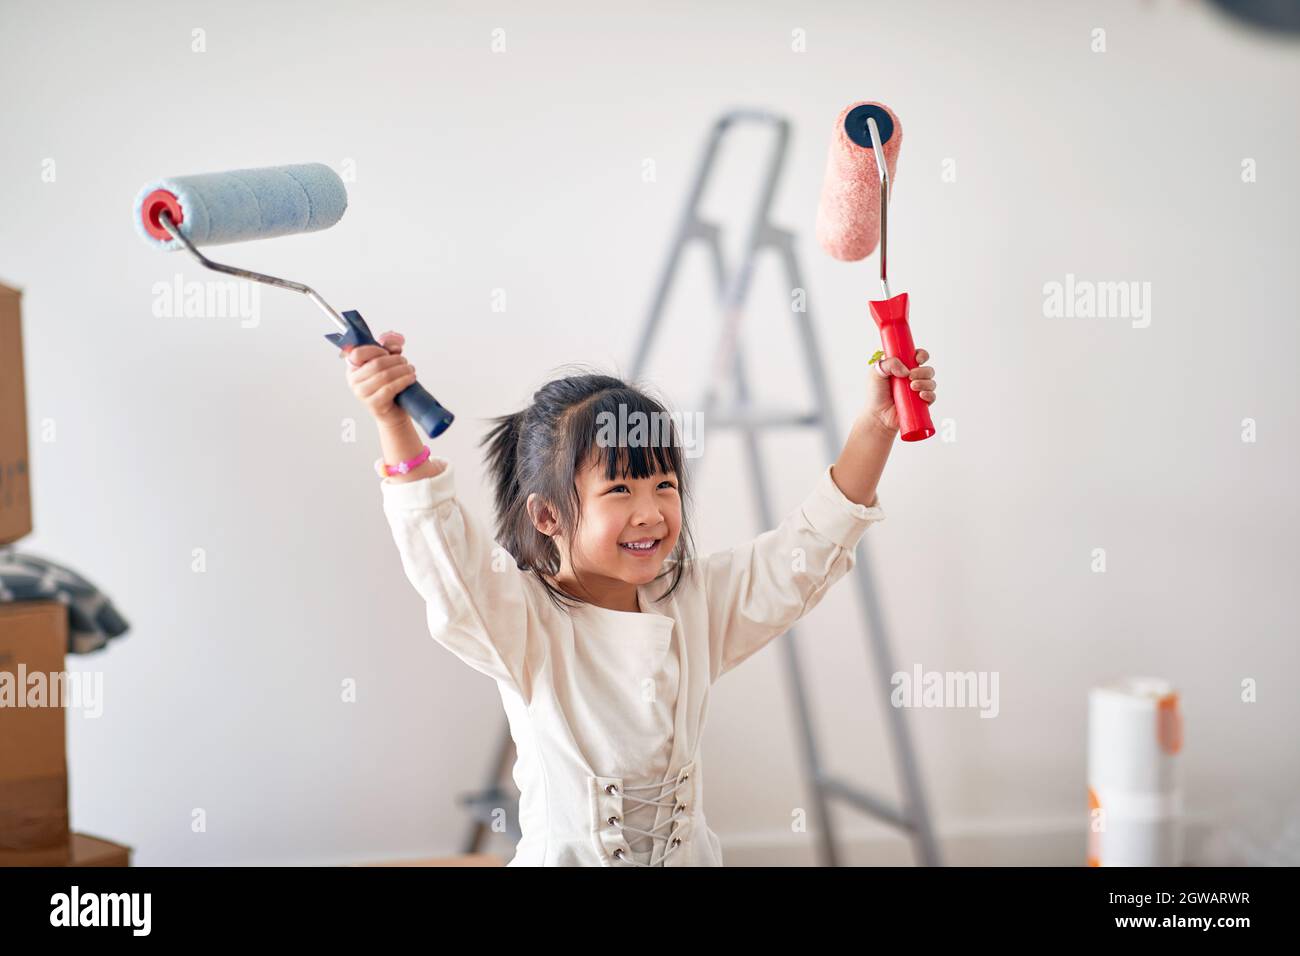 Ein kleines Mädchen in fröhlicher Atmosphäre freut sich darauf, ein neues Zuhause zu malen, das sie gerade mit der Familie bezogen hat. Zuhause, Familie, Umzug Stockfoto